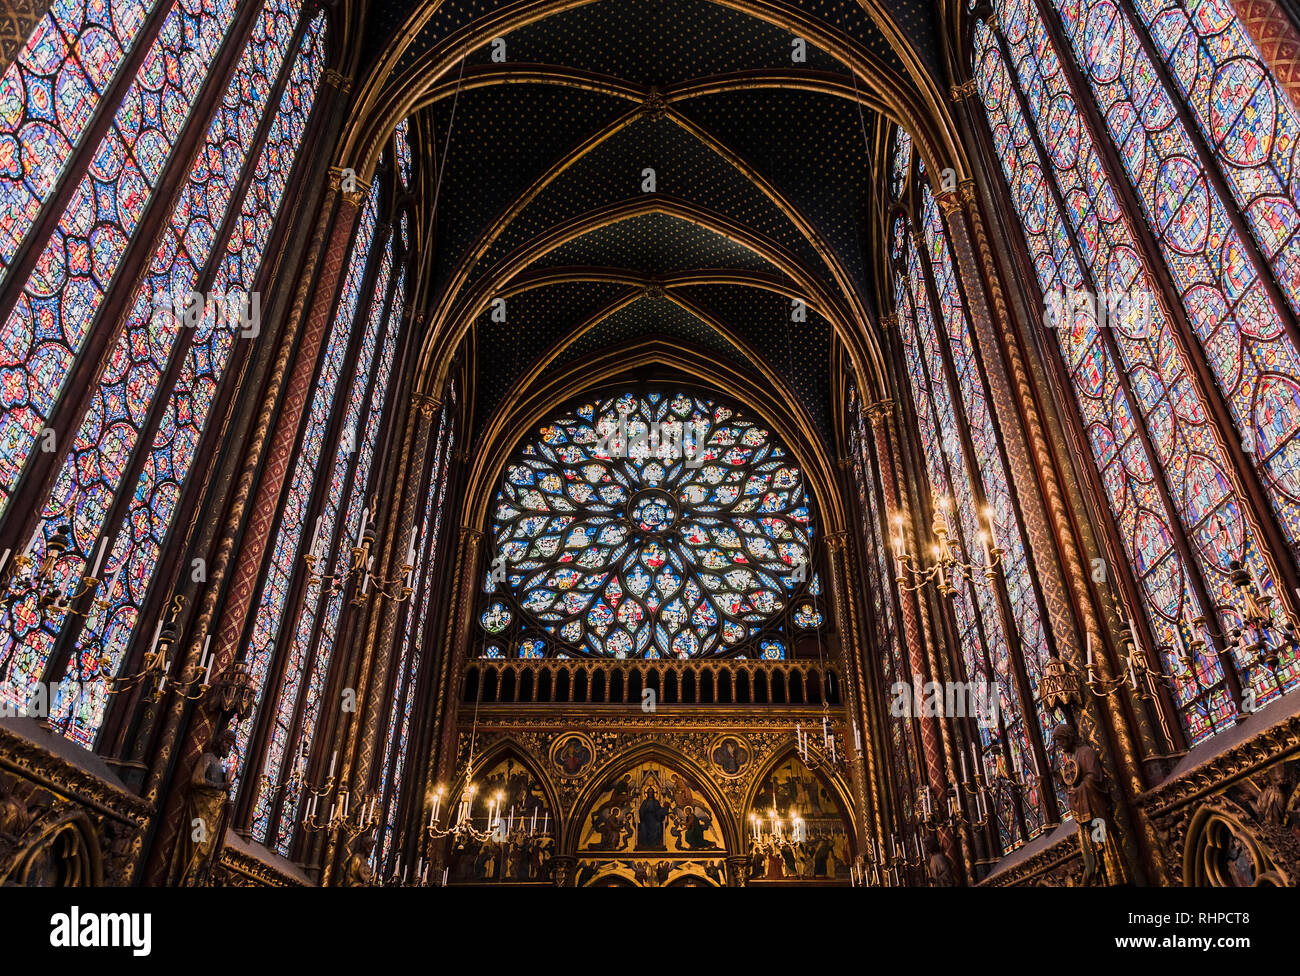 PARIS, Frankreich, 18. MAI 2016: schöne Interieur der Sainte-Chapelle (Heilige Kapelle), eine königliche mittelalterlichen gotischen Kapelle in Paris, Frankreich Stockfoto